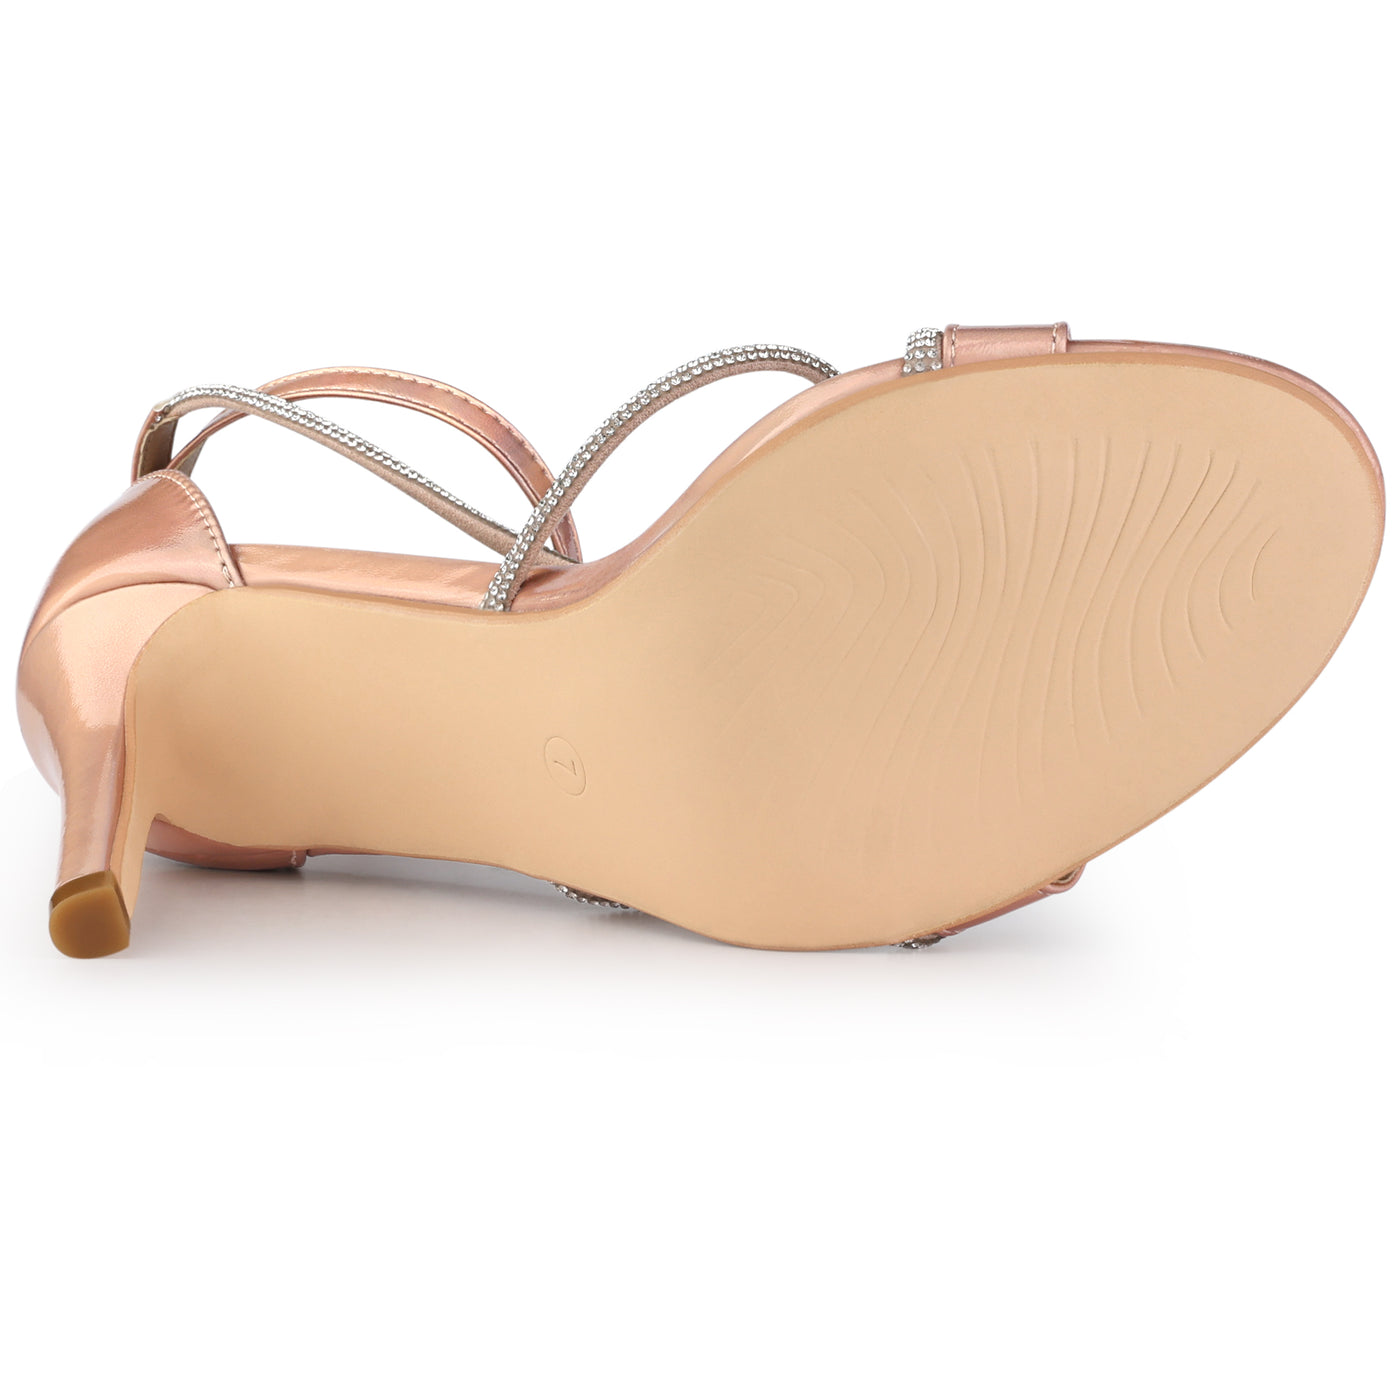 Allegra K Women's Rhinestone Knot Strap Stiletto Heels Sandals